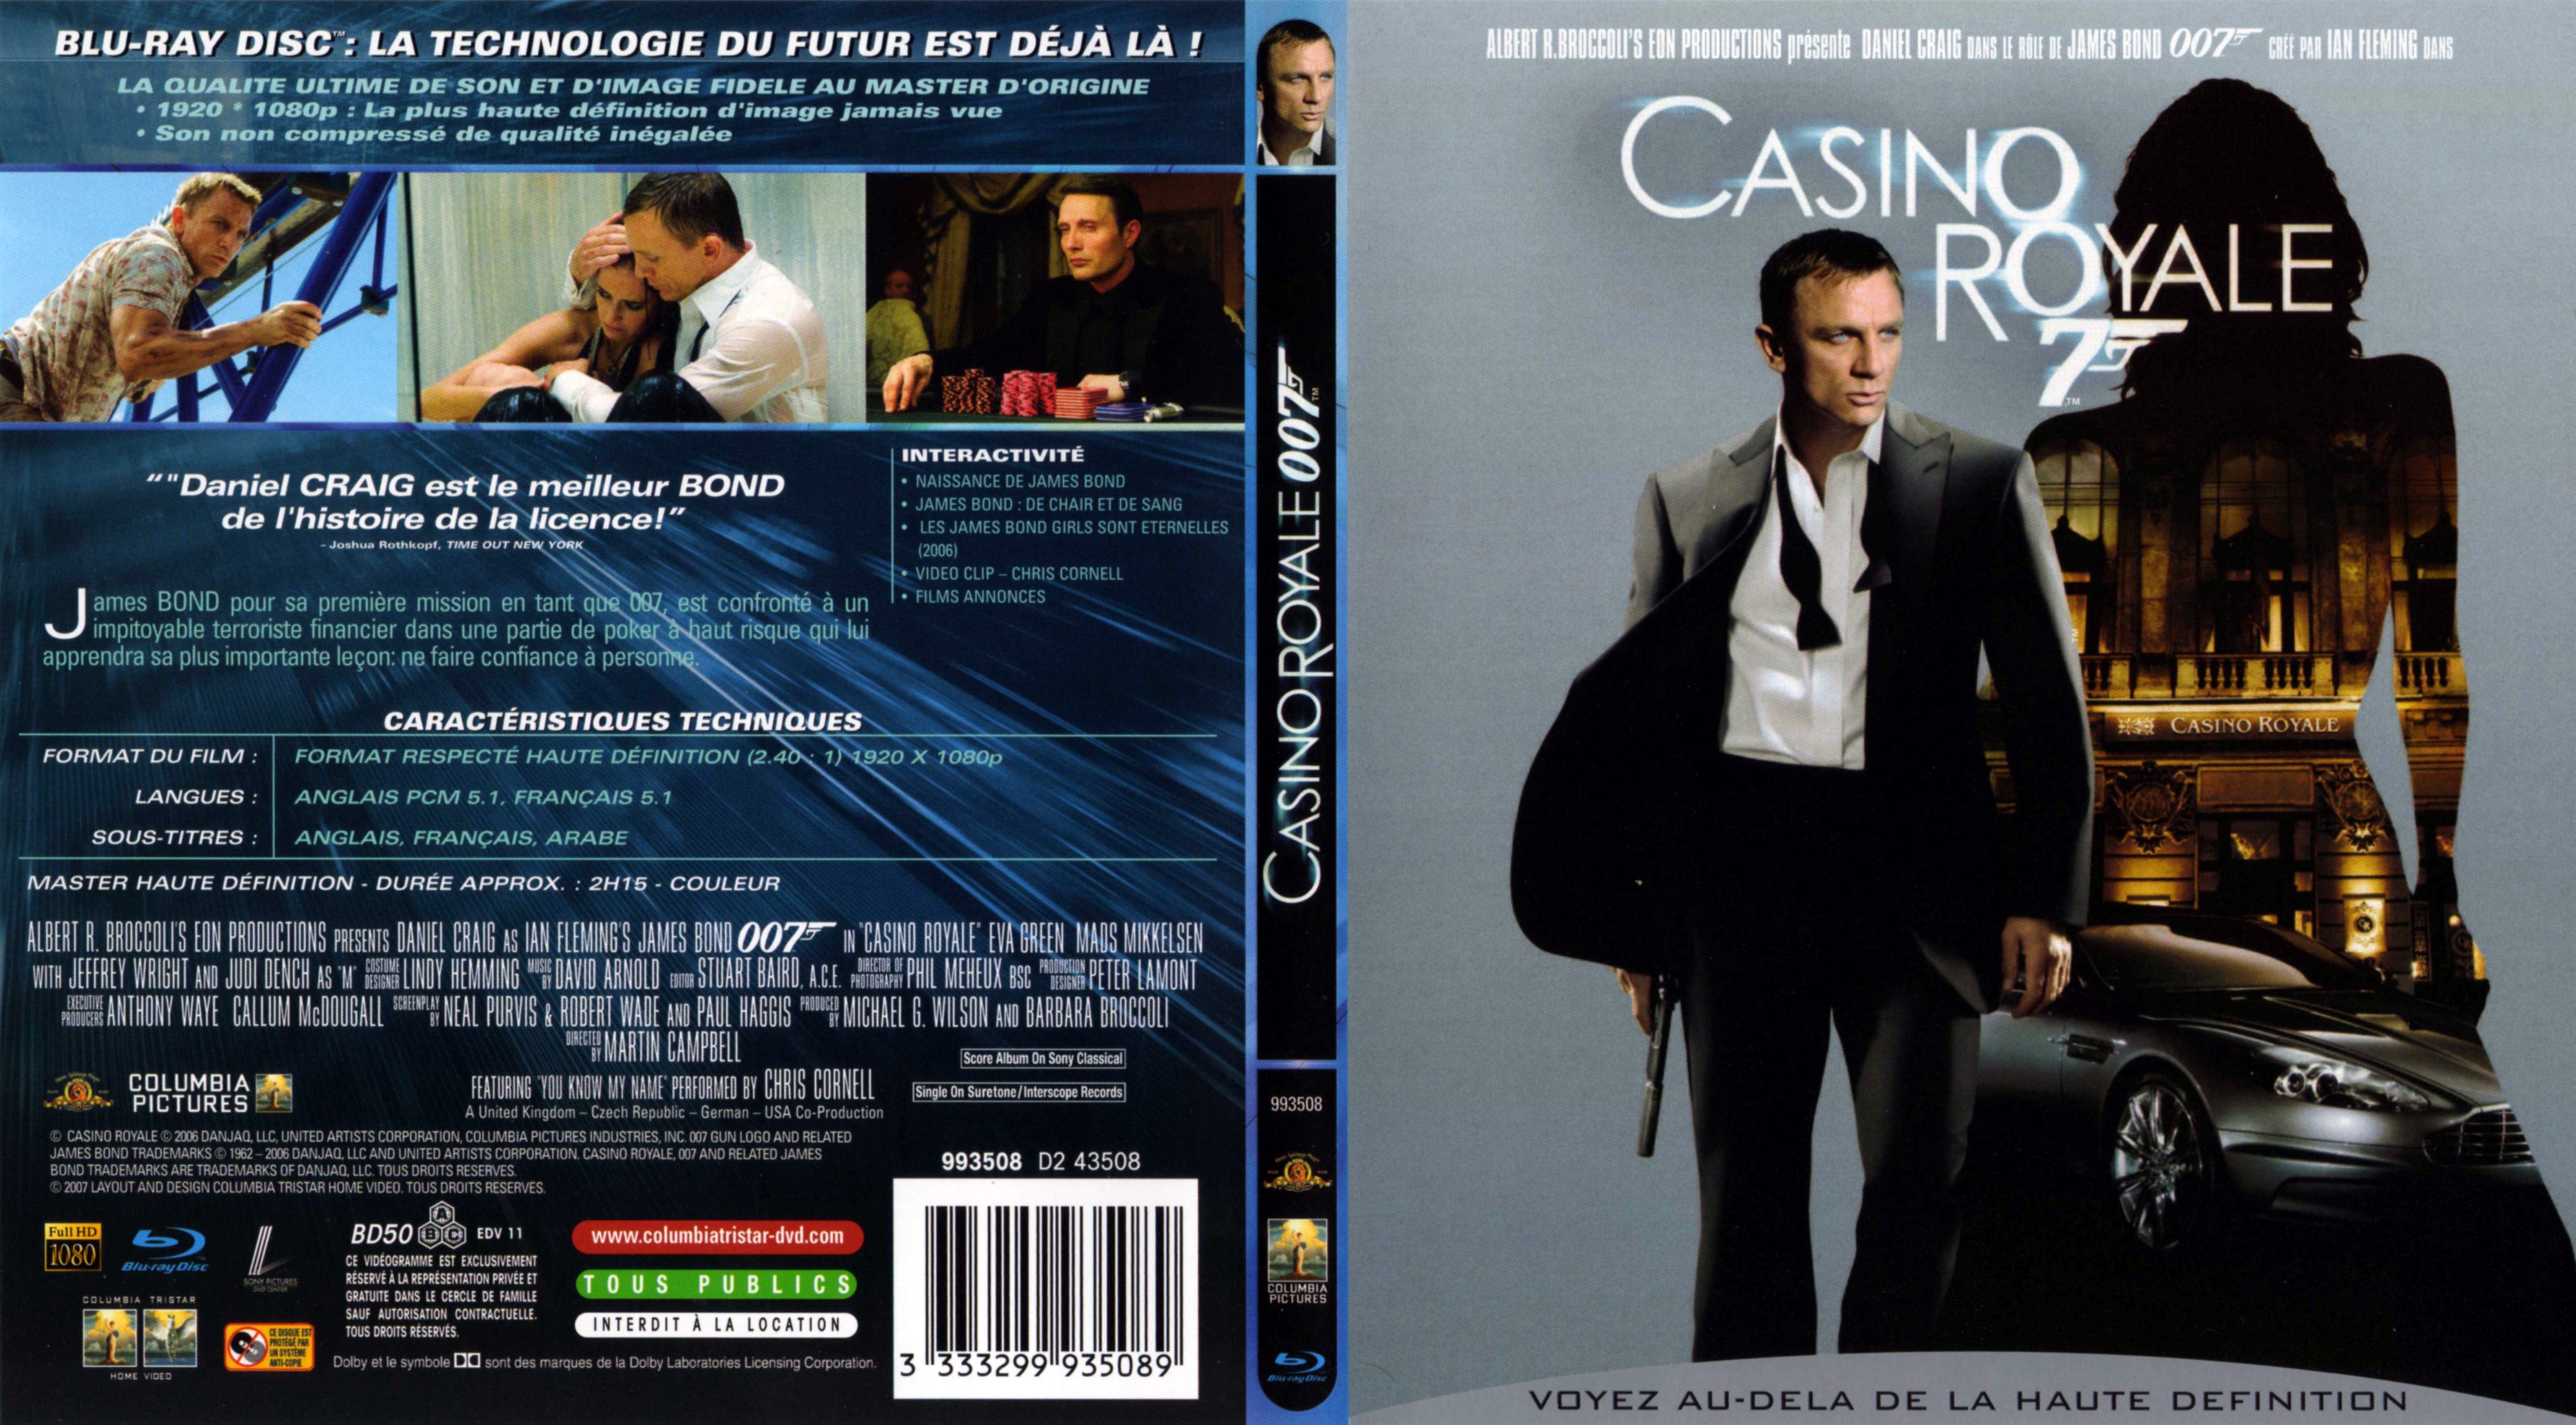 007 logo casino royale